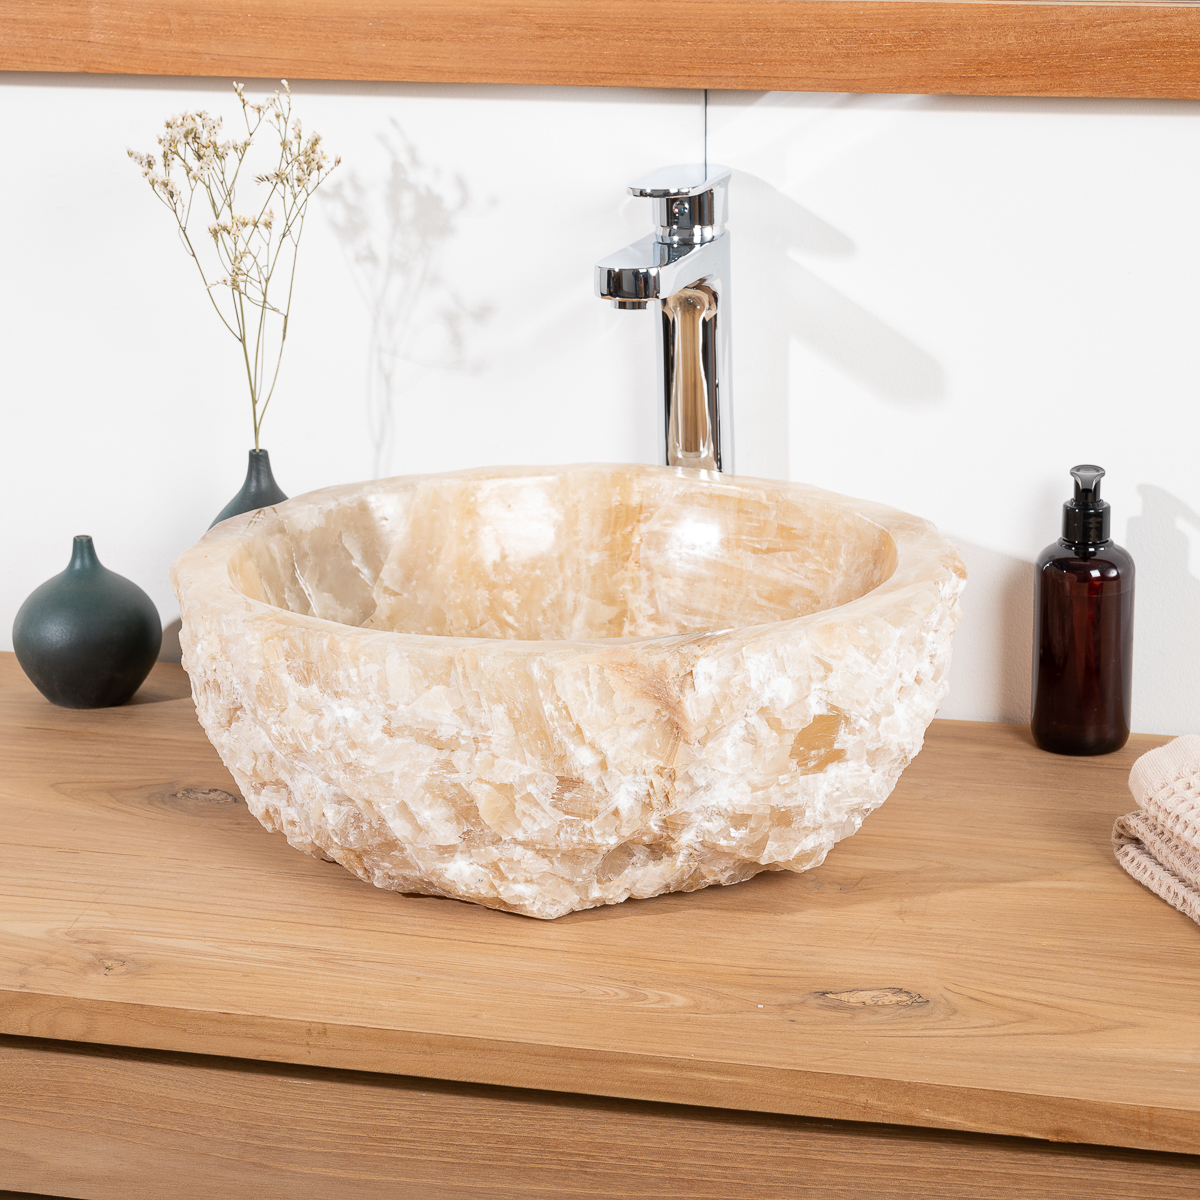 The Countertop Natural Stone Washbasin